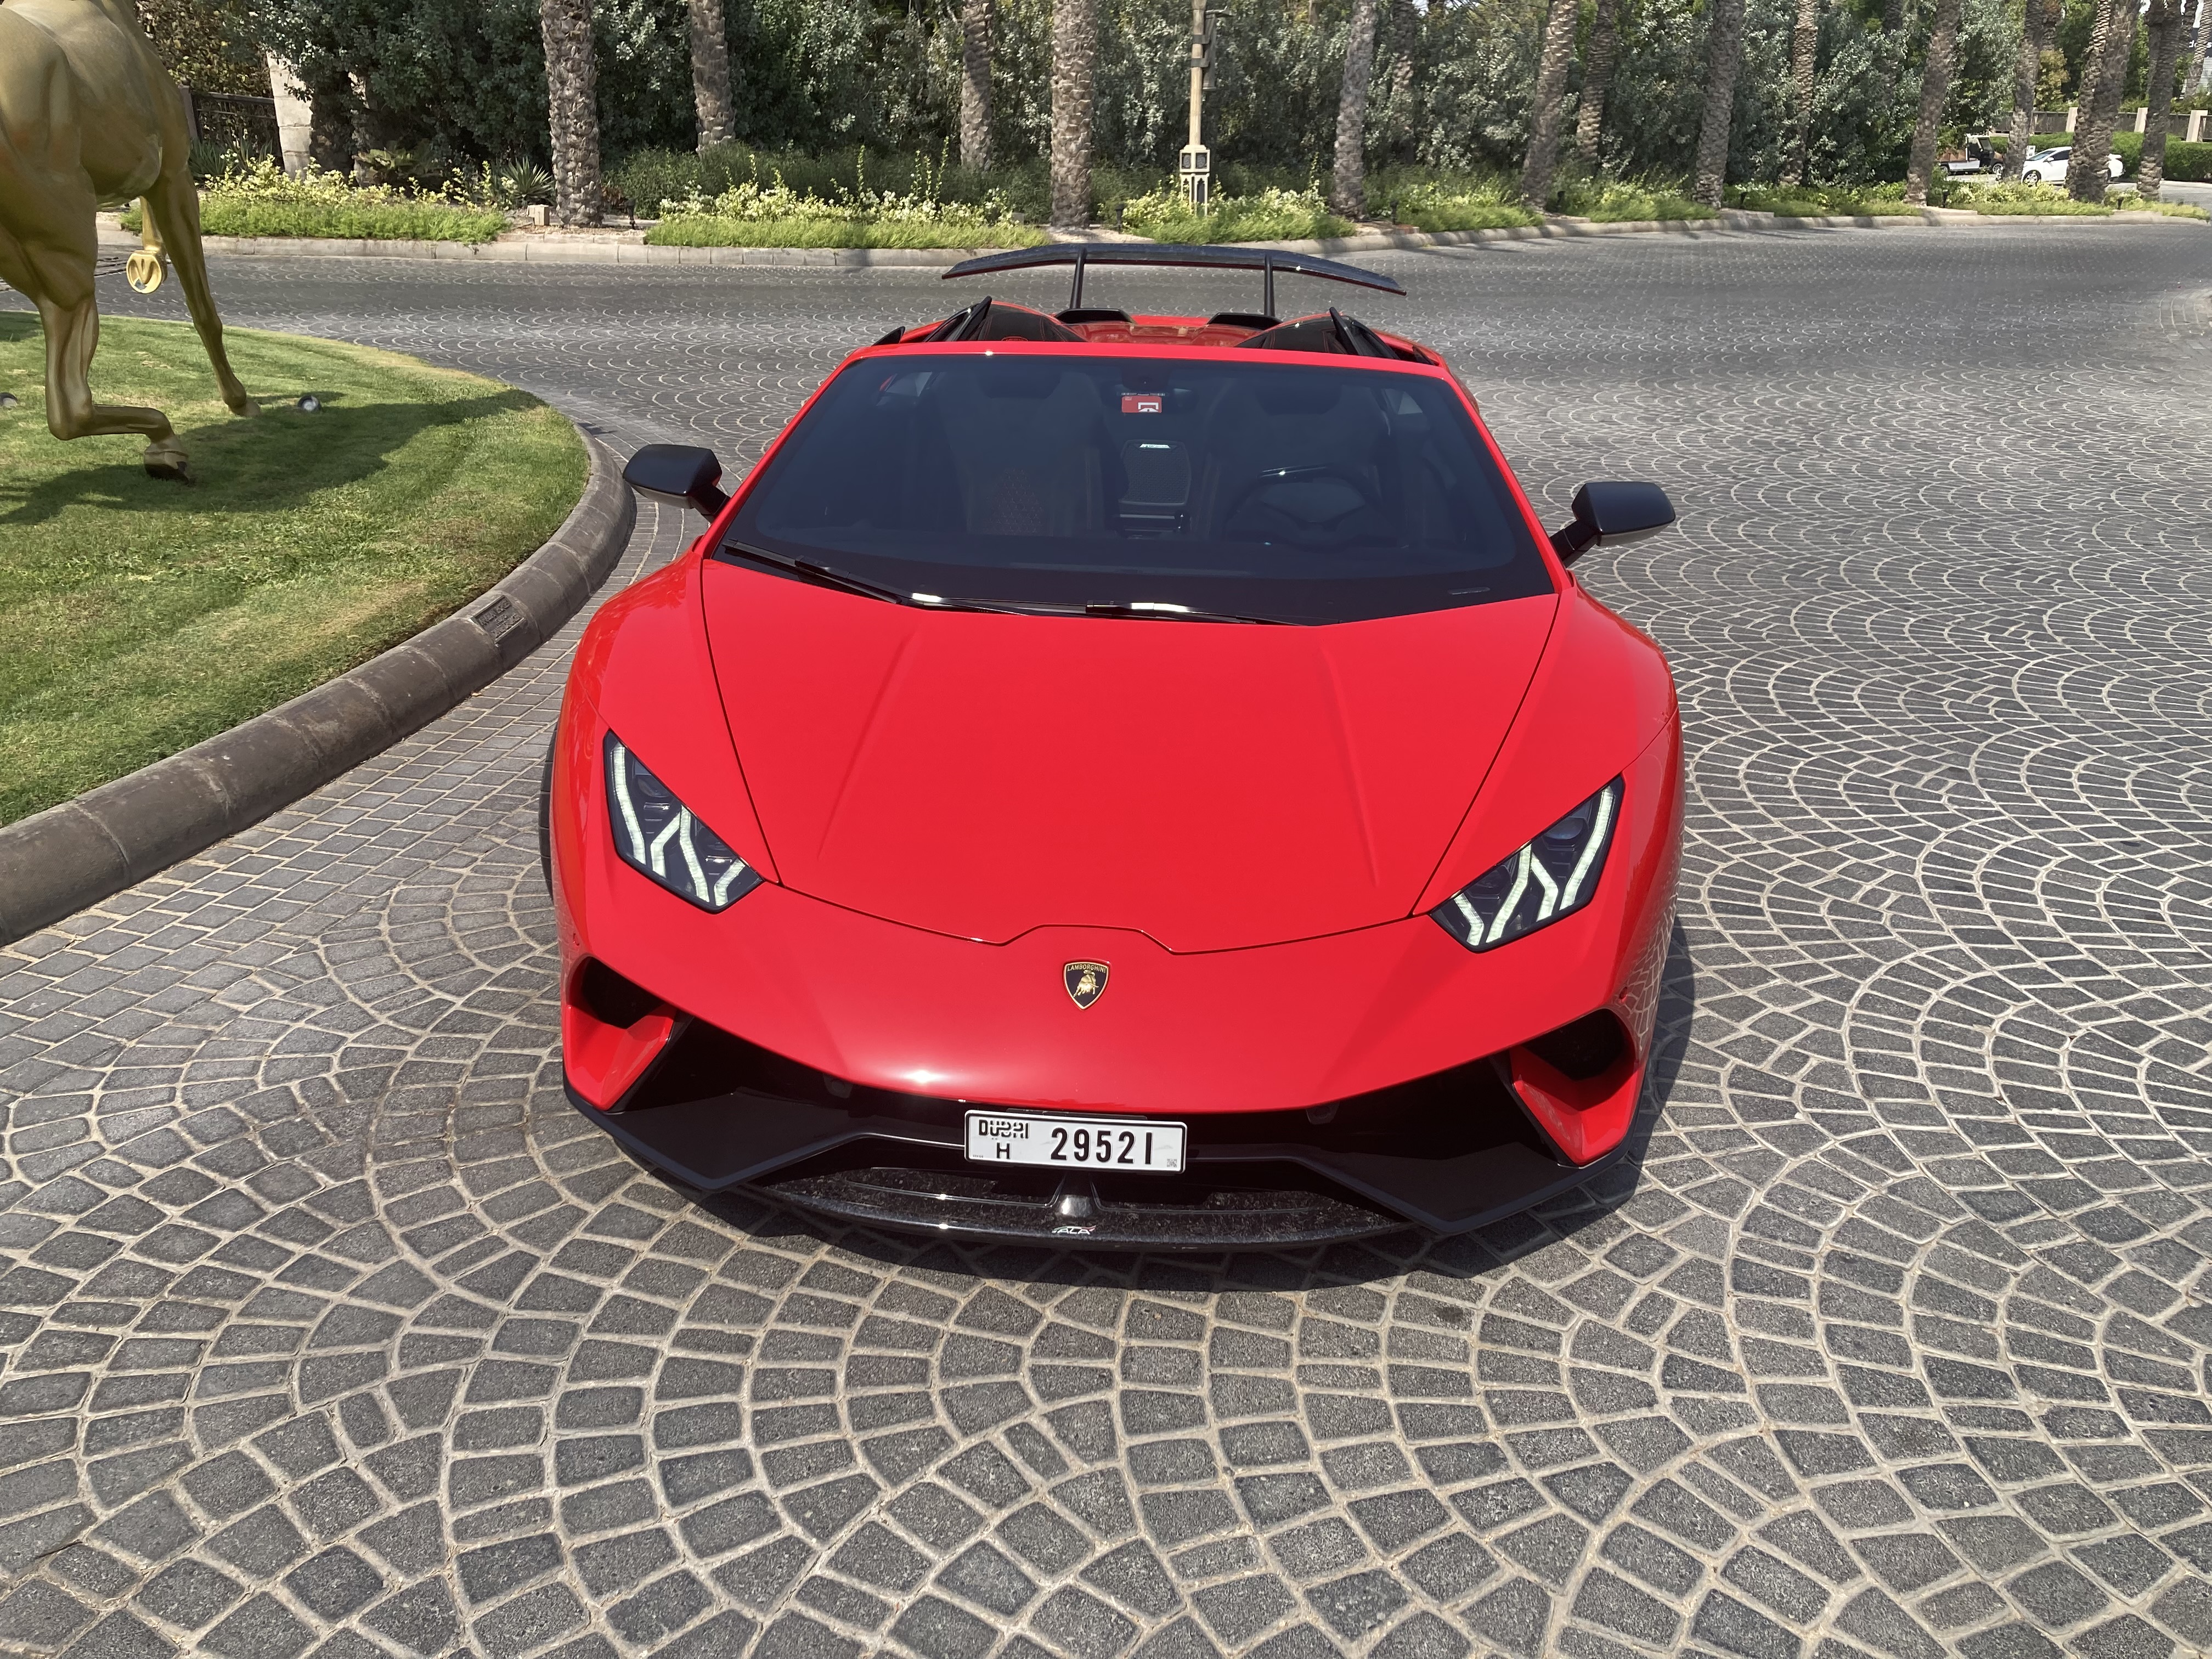 LAMBORGHINI HURACAN 2020 Listed By Exford | Rent a Car Dubai | Cheap Car Rental Dubai AED 50/Day | Car Hire UAE